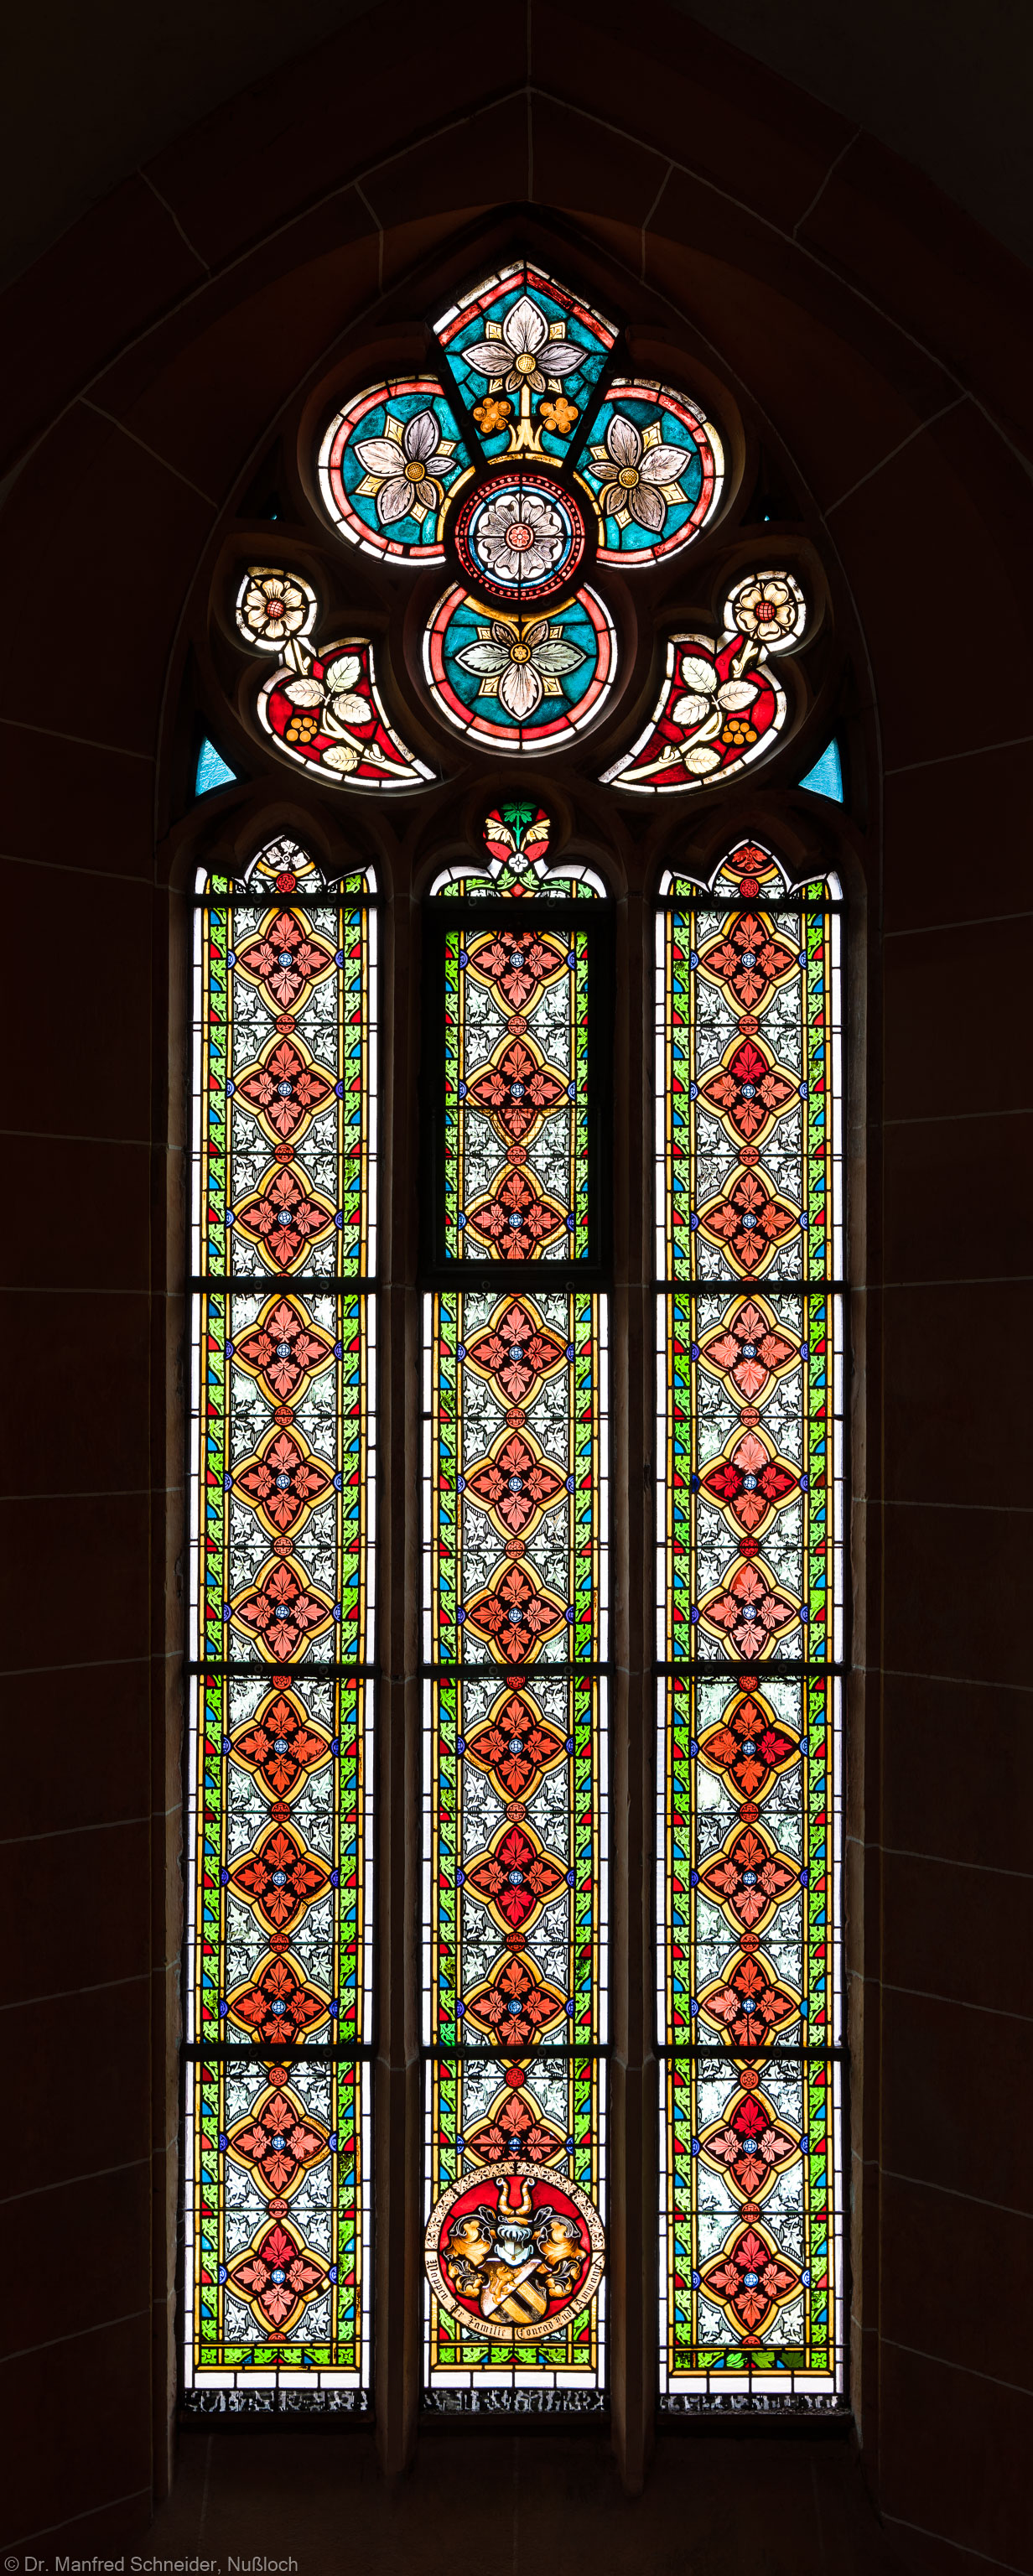 Heidelberg - Heiliggeistkirche - Südschiff - 3. Joch, von Westen aus gezählt - Gesamtaufnahme des Ornamentfensters (aufgenommen im Oktober 2015, am frühen Nachmittag)